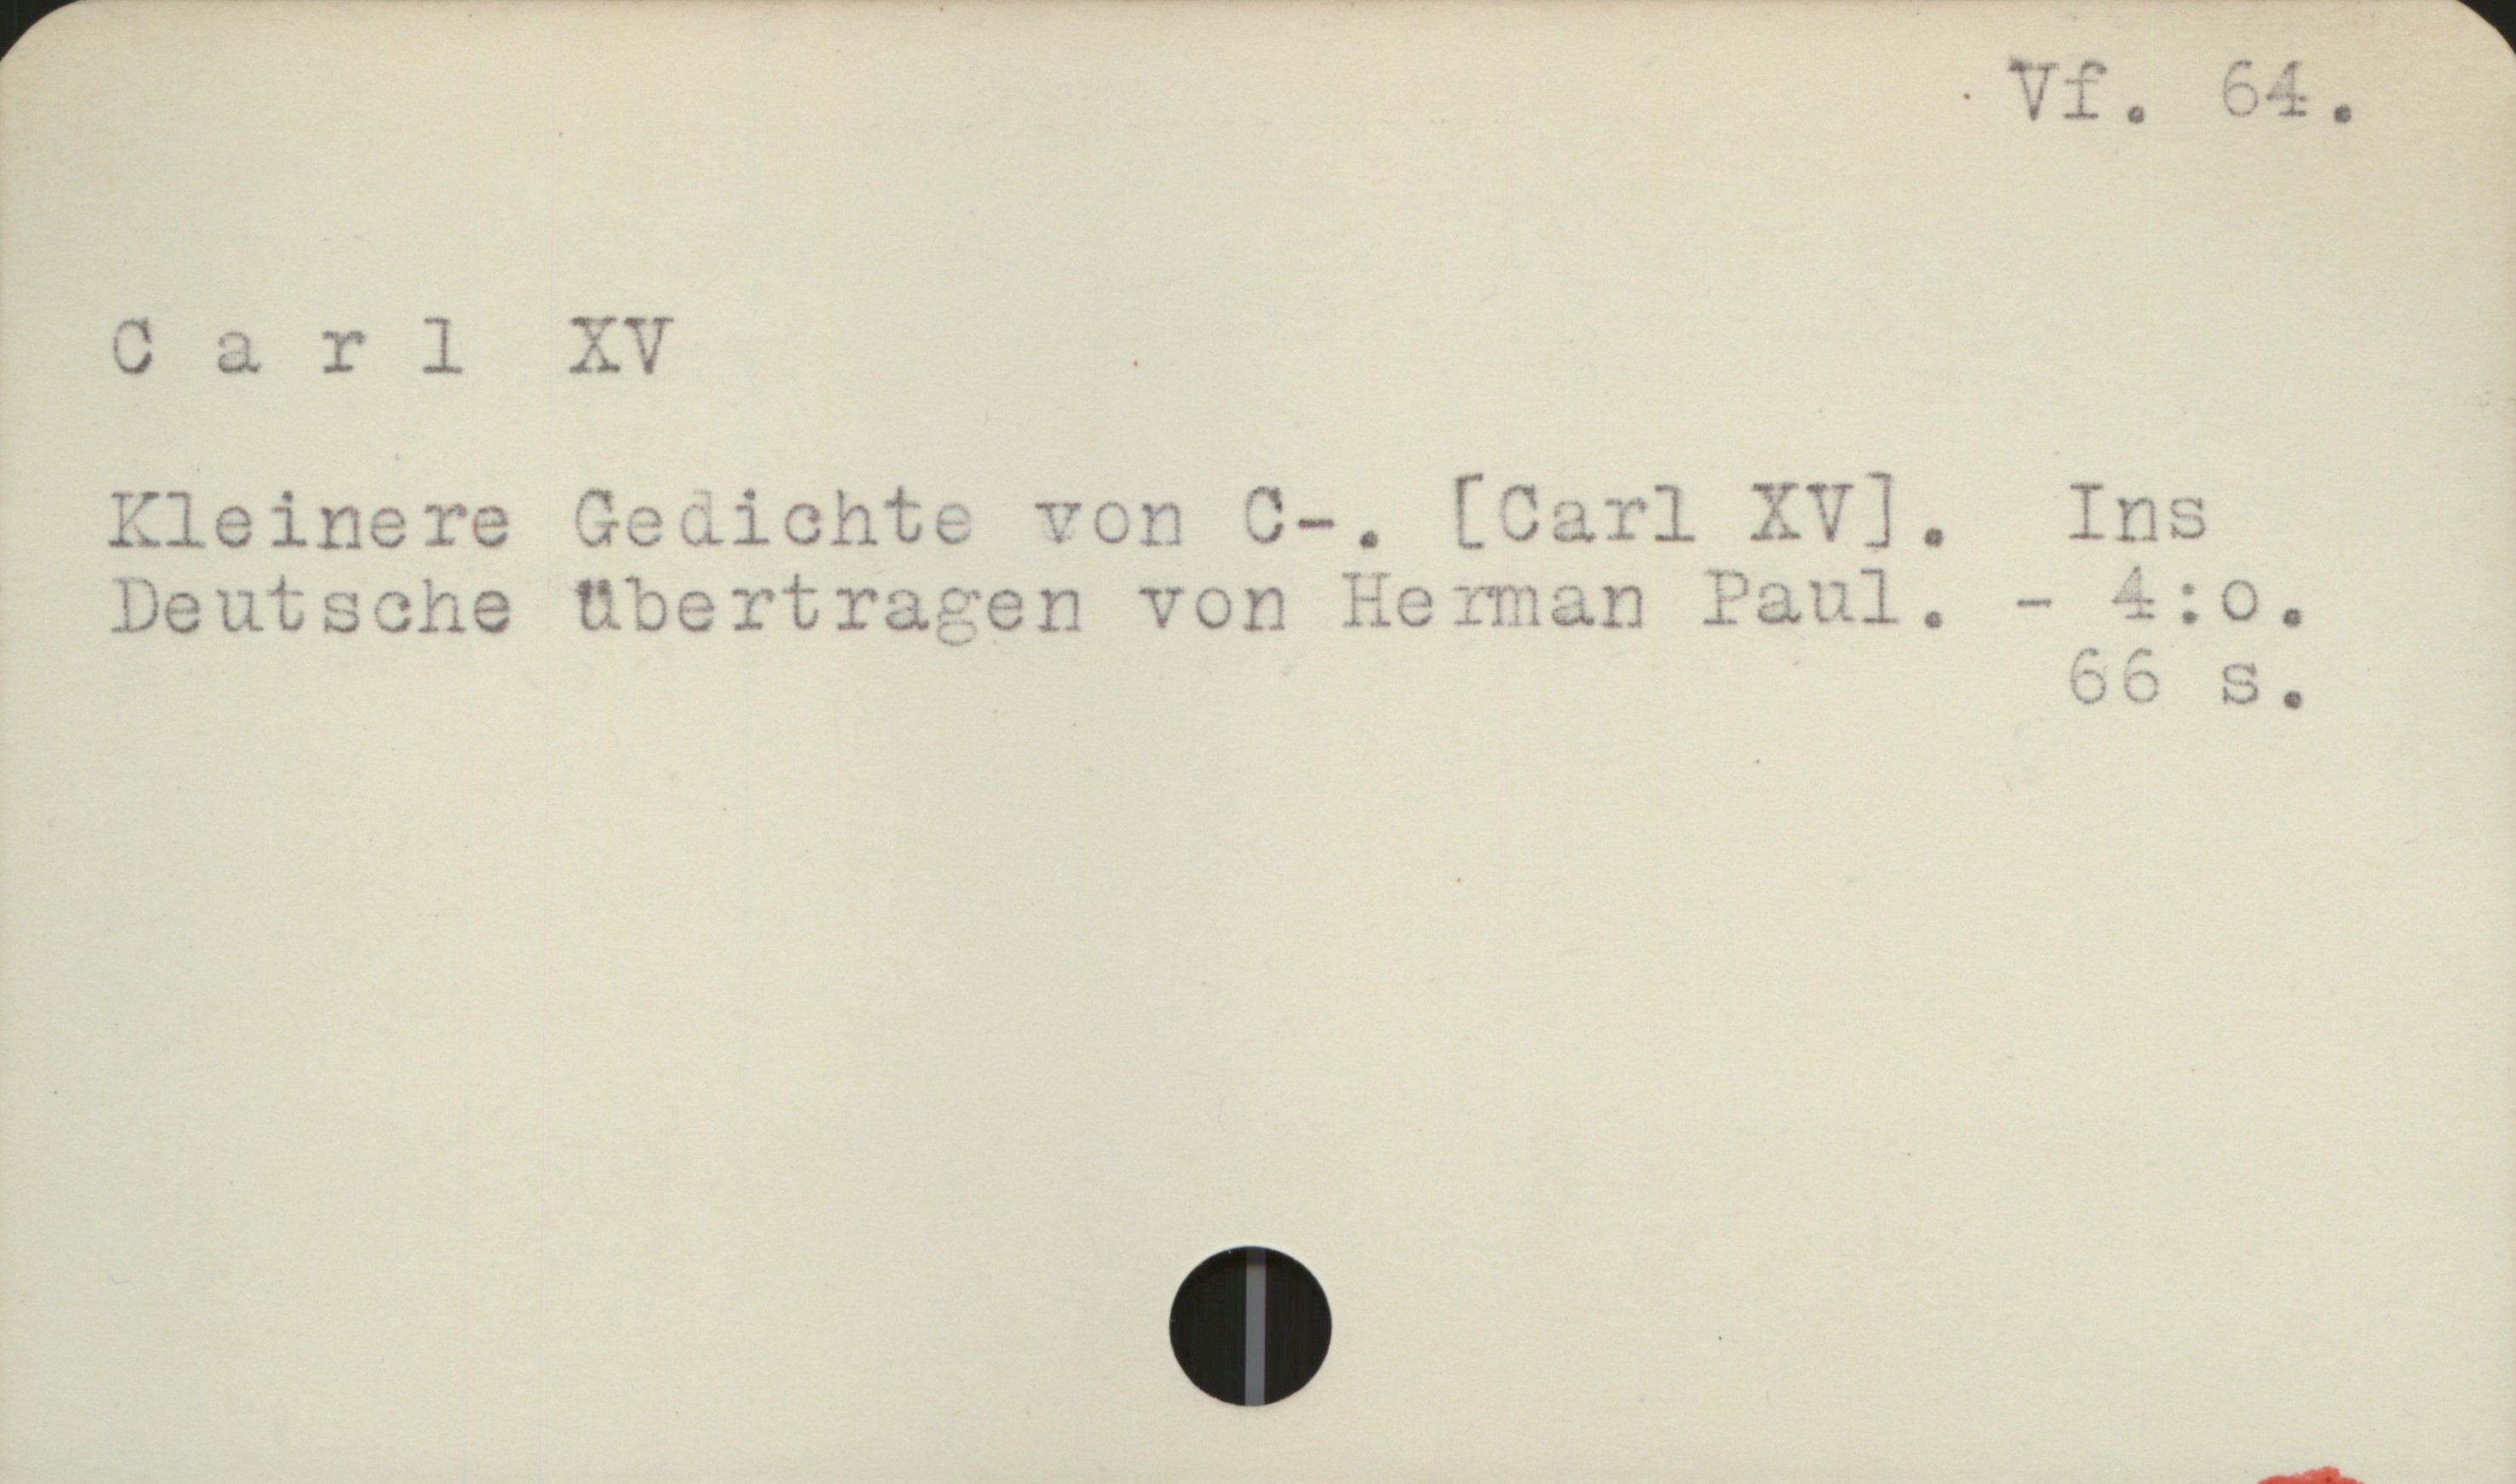  [ * Vf. 64.
Carl XV .
Eleinere Seuichte von 3-. [Sarl KV].  Inc
Deutsche tibertracen von Rerman Paud,. - -=-+0.
55 B,

